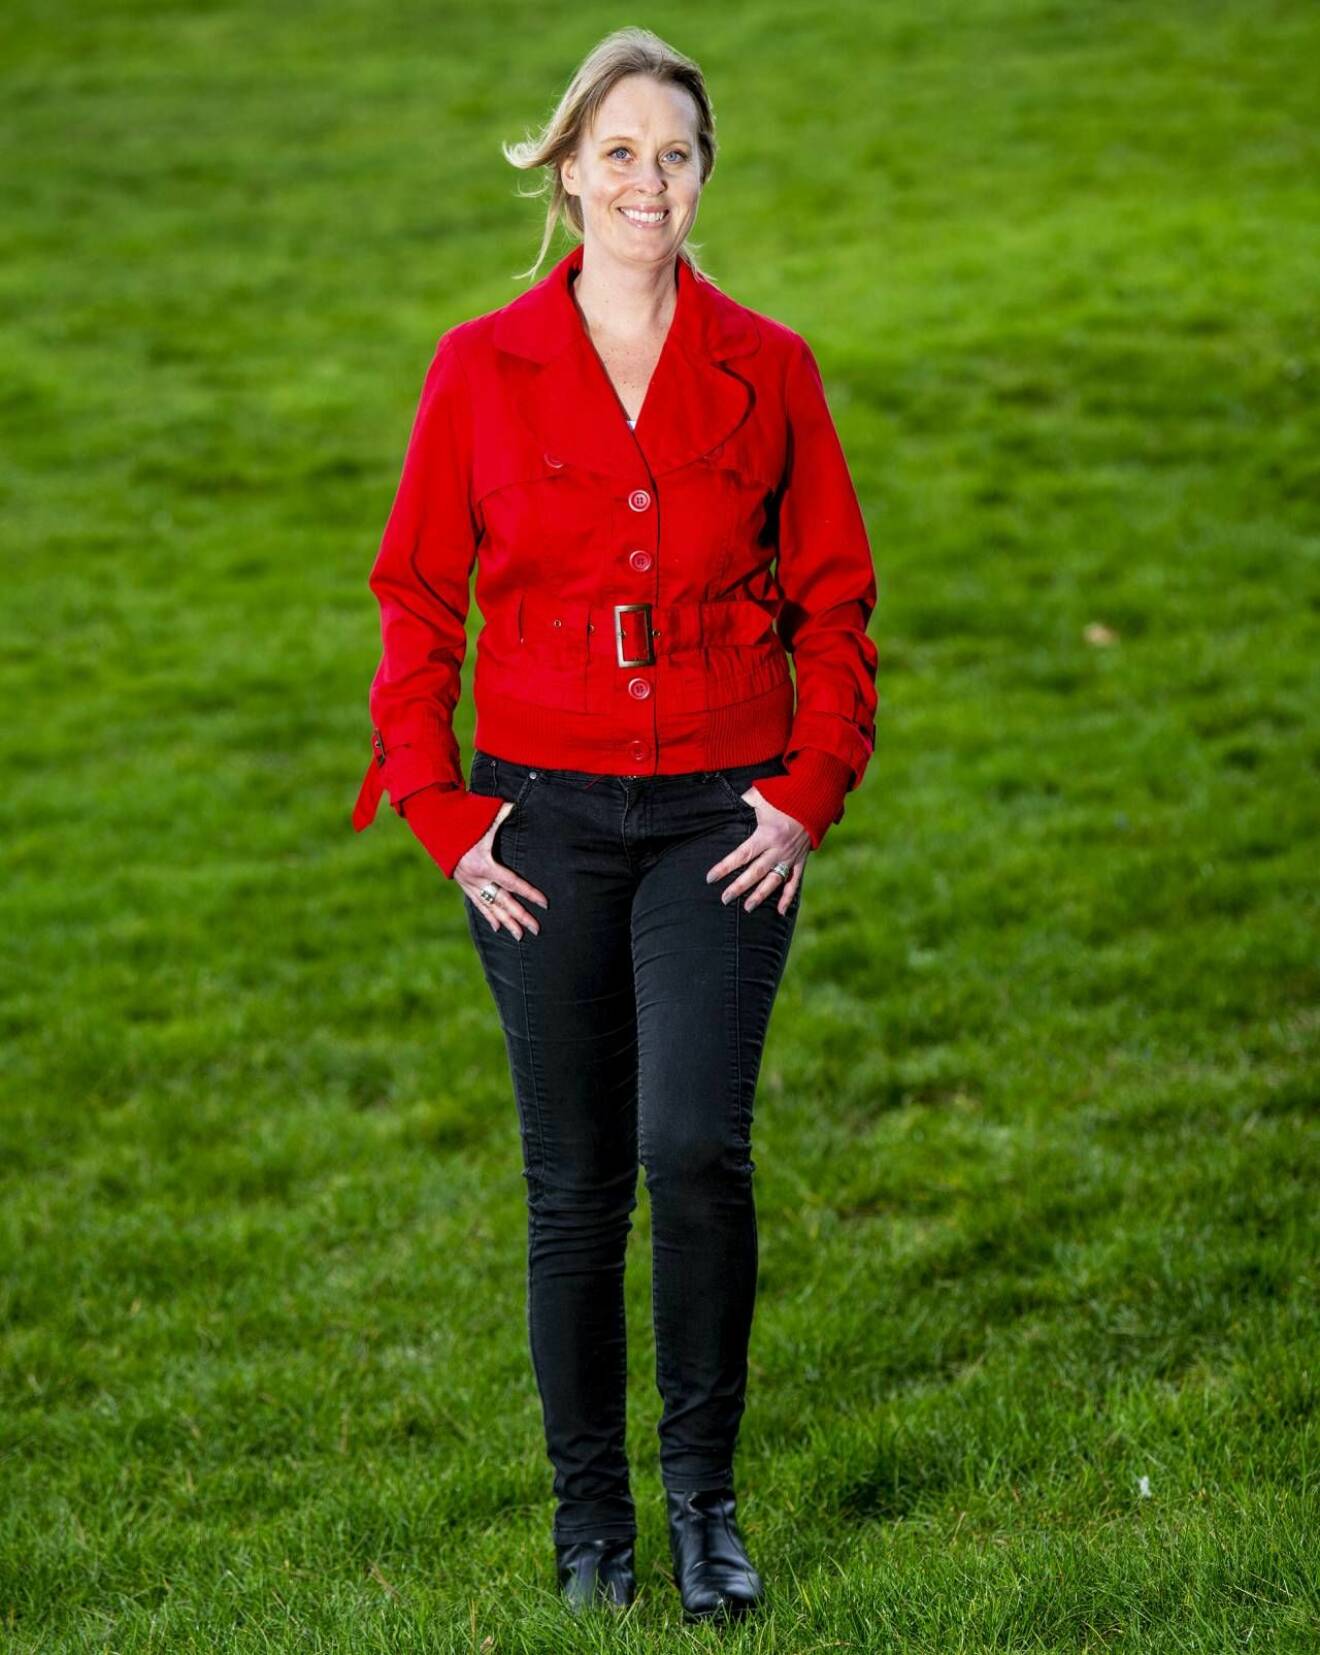 Nathalie, klädd i röd jacka, på promenad i gräset